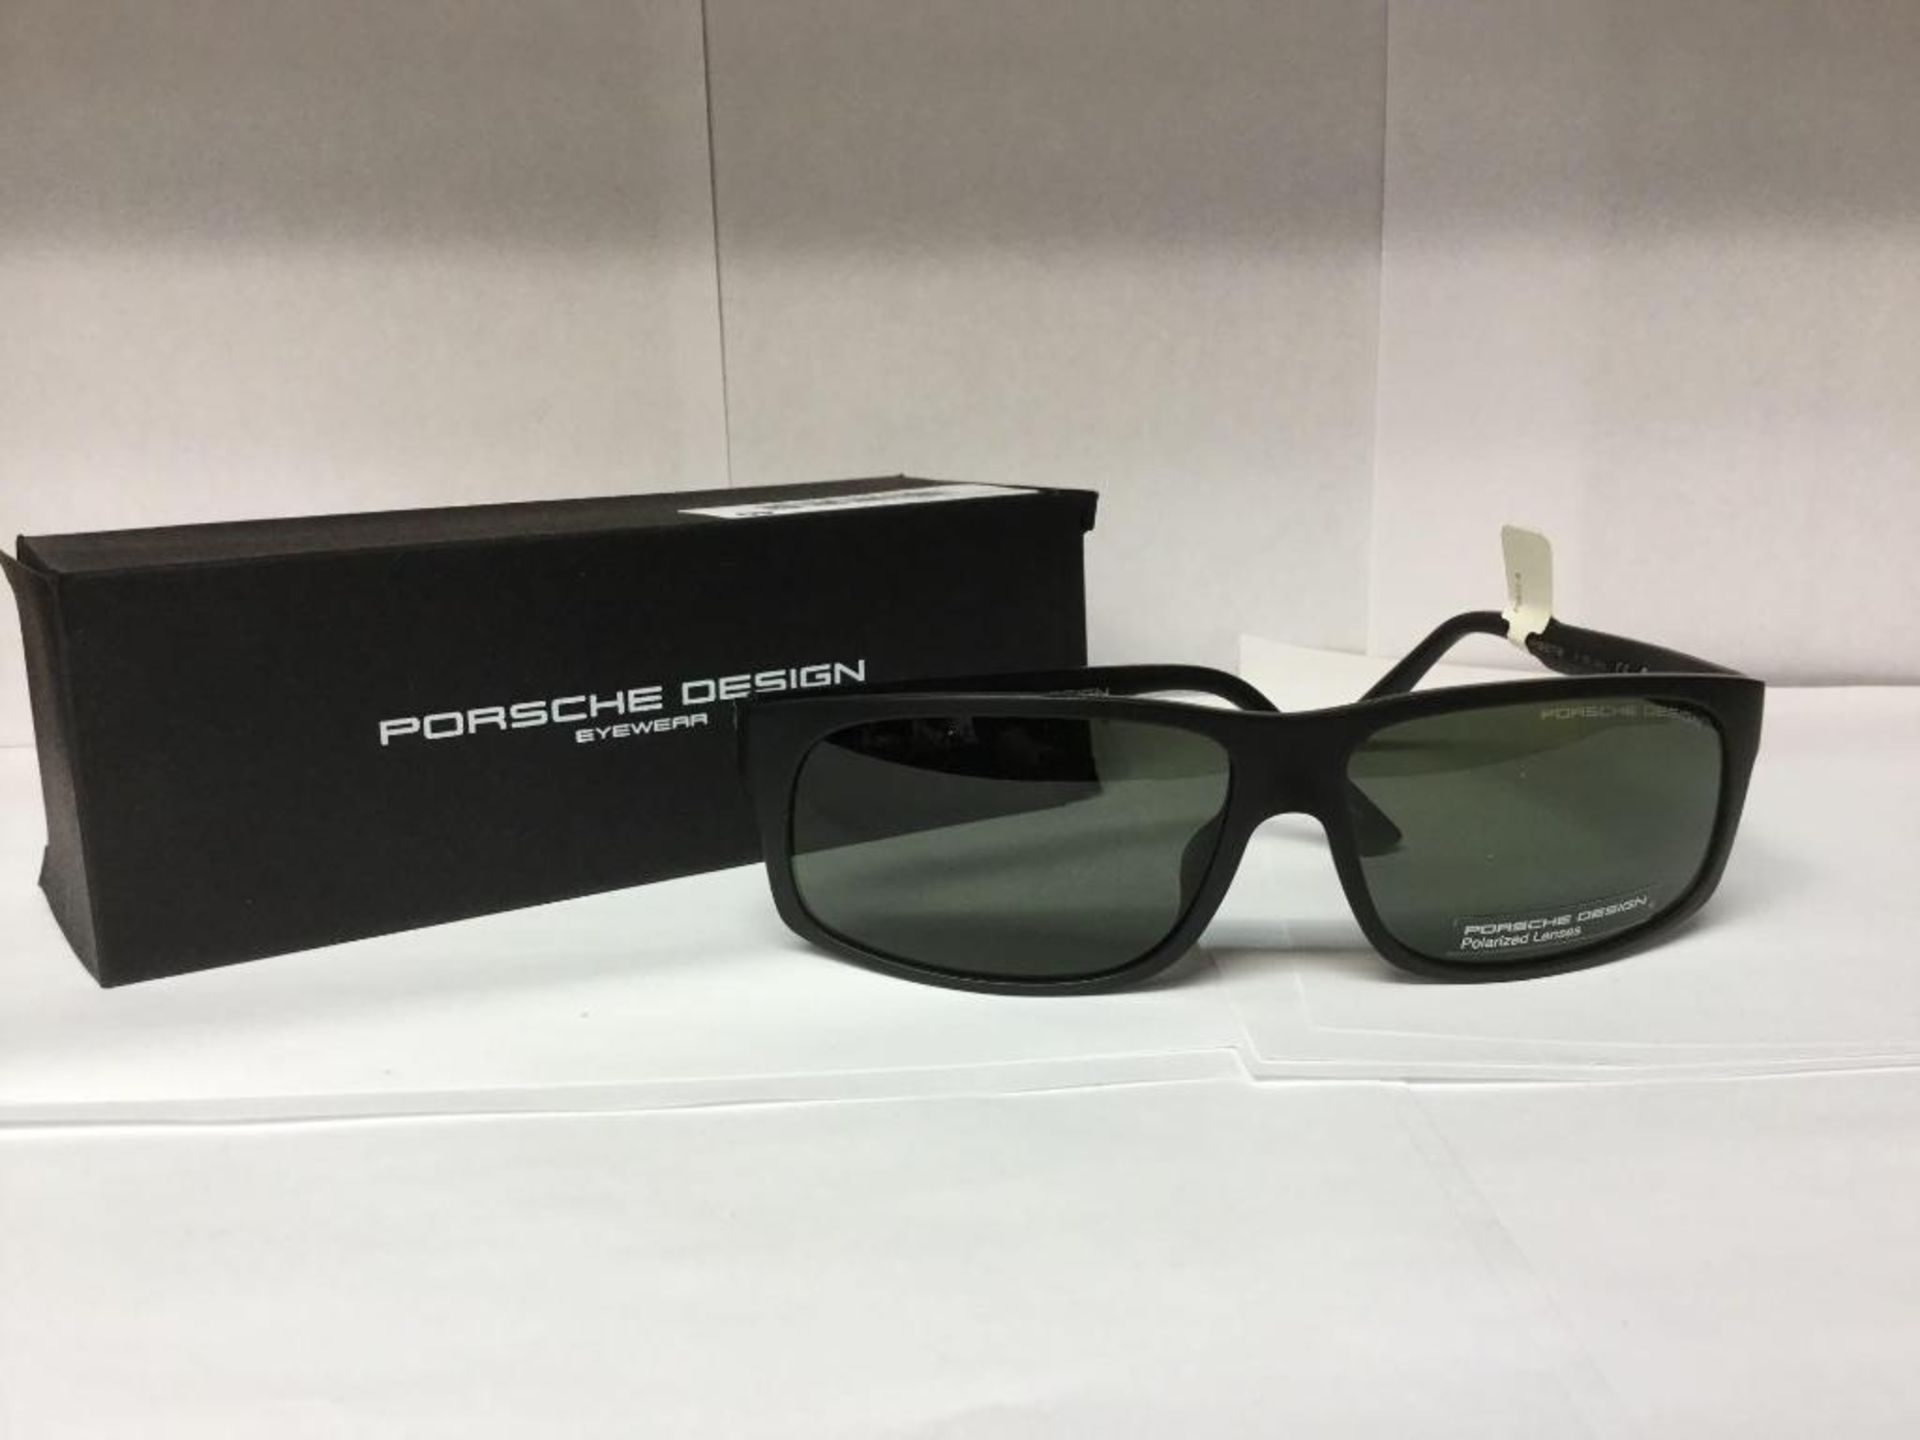 Porsche Design Sunglasses with Box and Case - Value $460